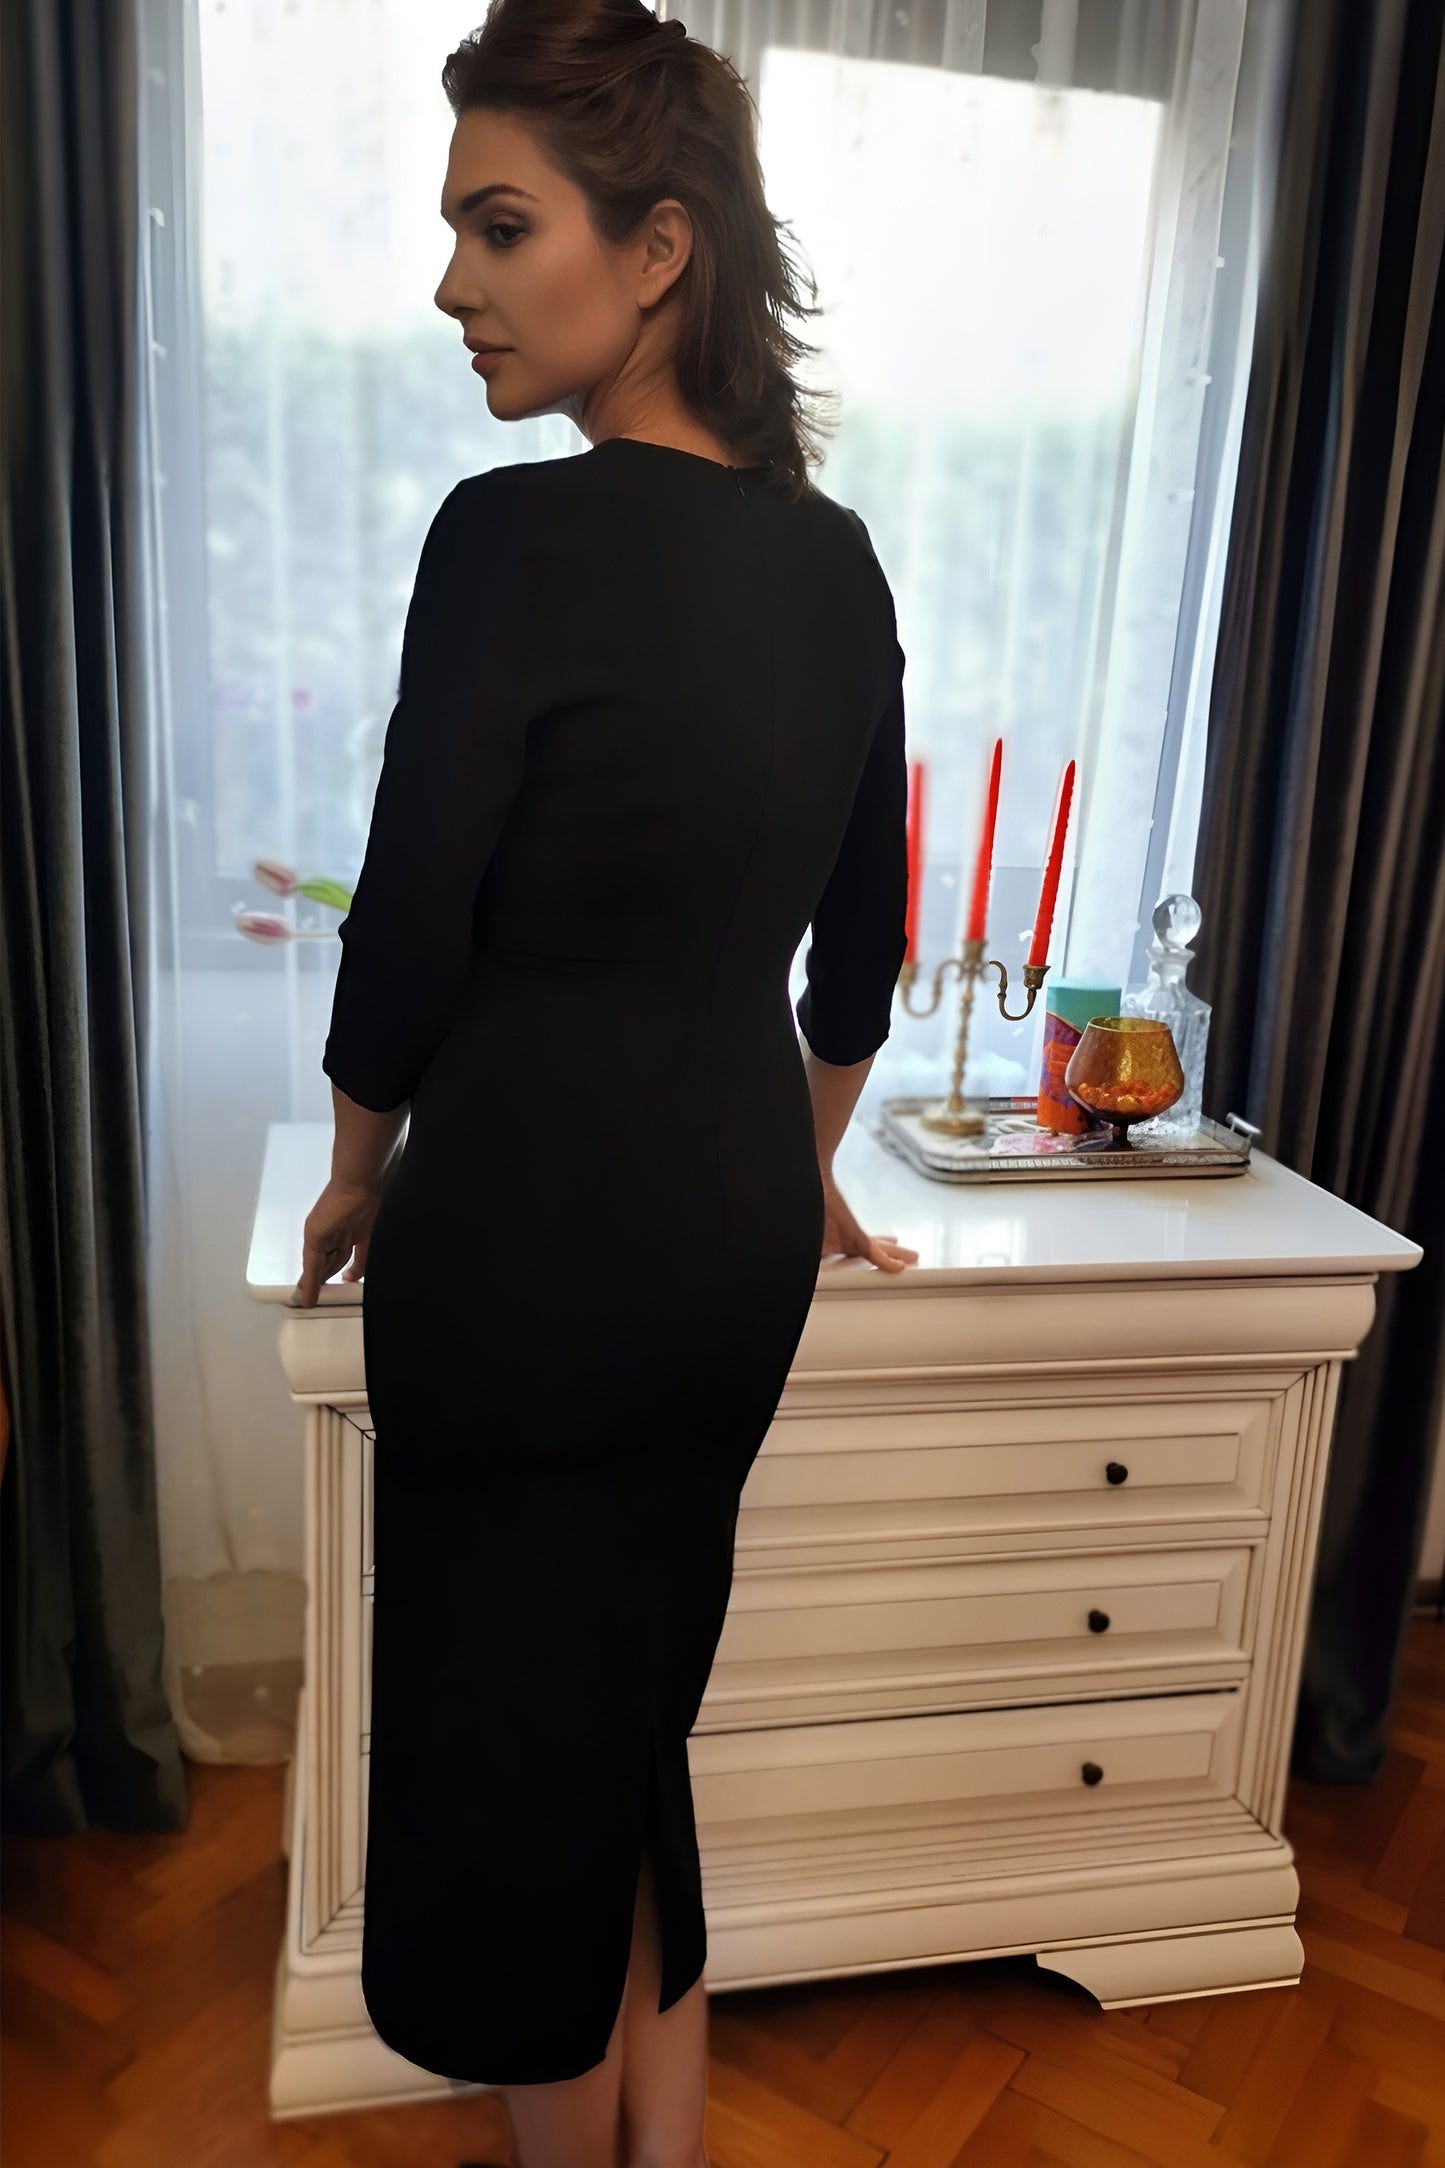 Graceful Elegance: Knotted black Dress